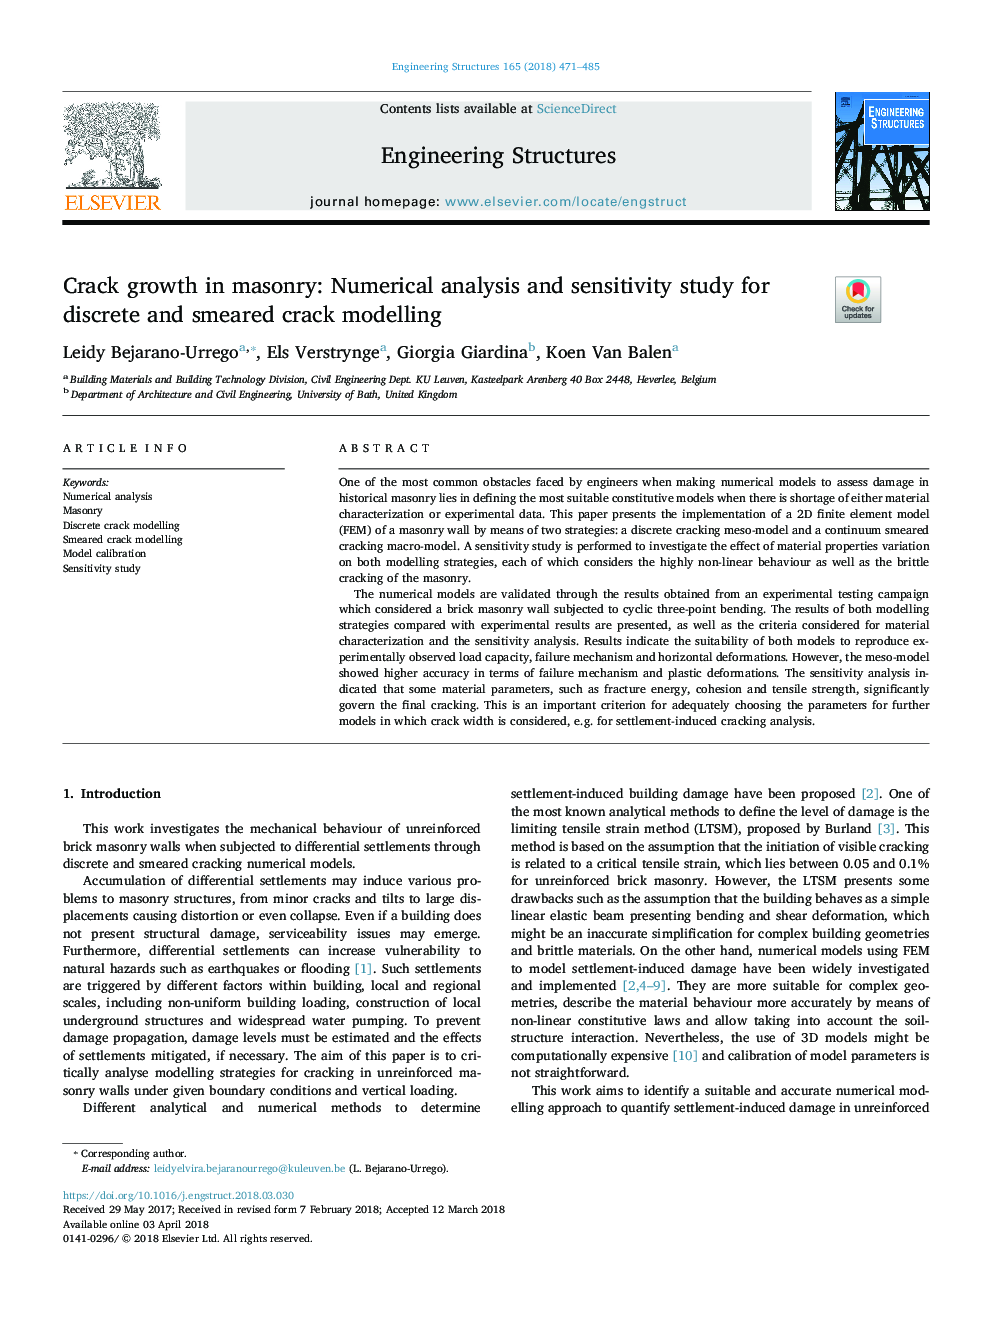 رشد کراک در سنگ تراشی: تجزیه و تحلیل عددی و مطالعه حساسیت برای مدل سازی ترک های گسسته و مضر 